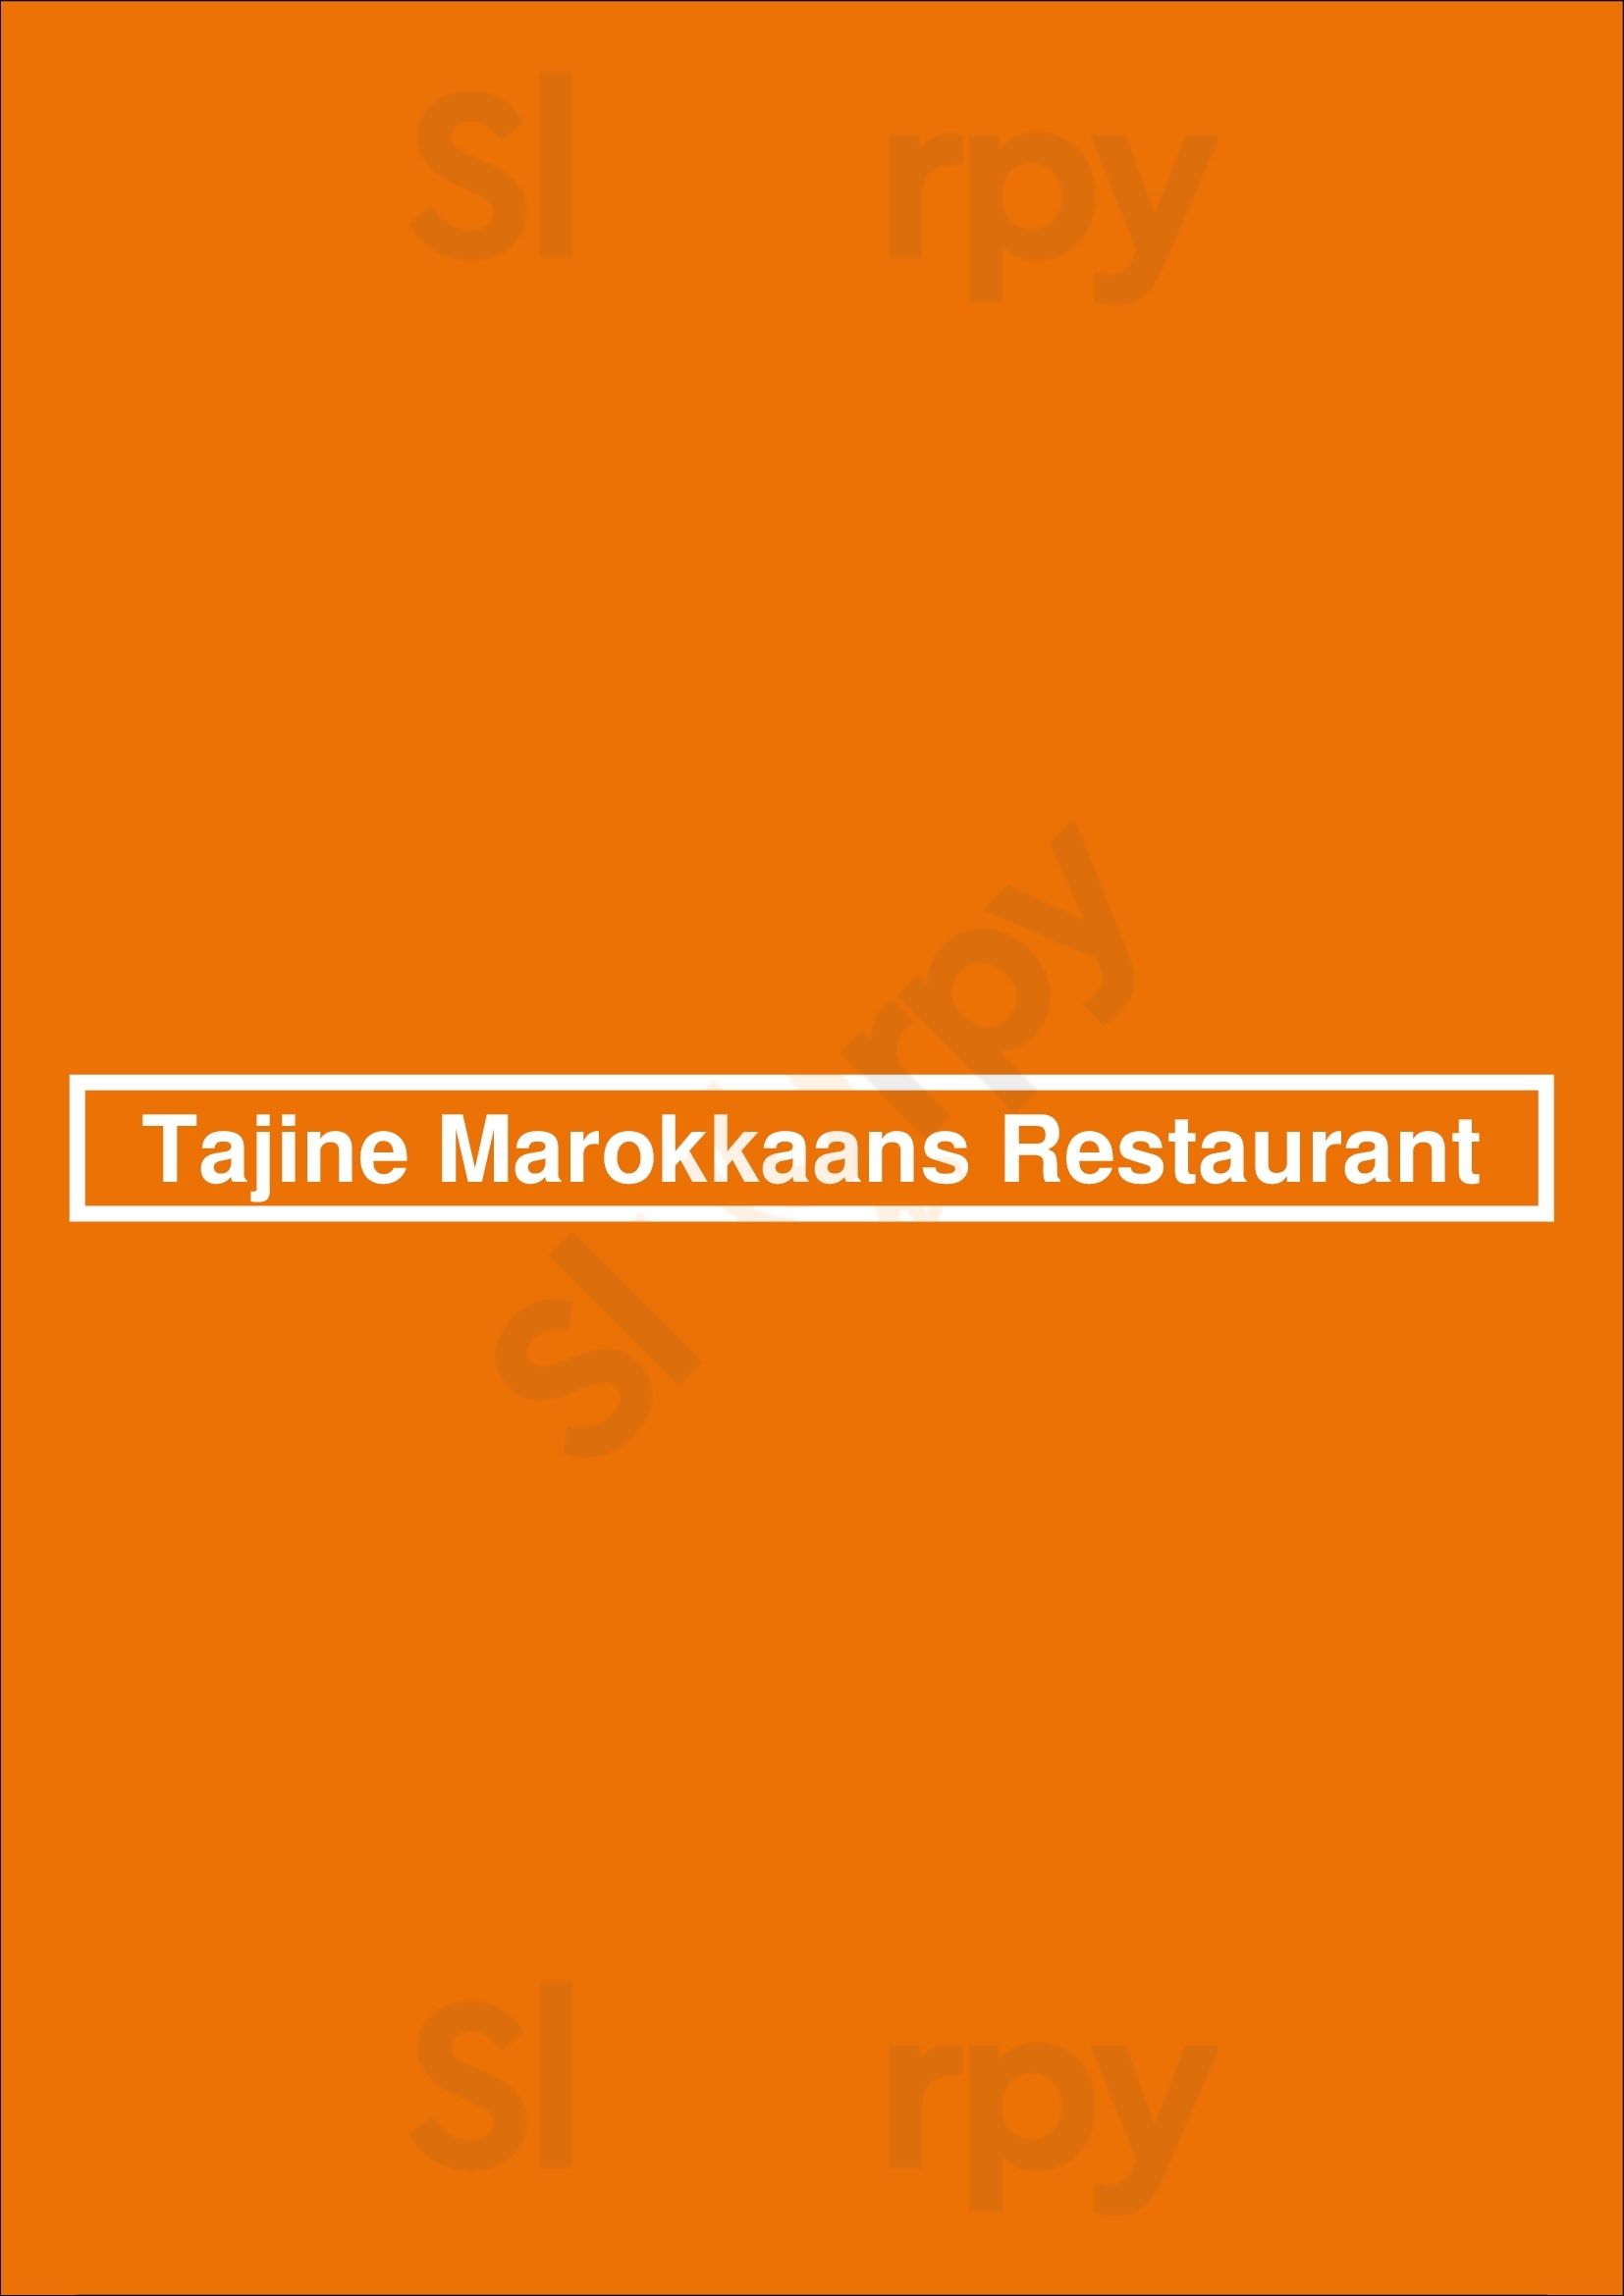 Tajine Marokkaans Restaurant Lelystad Menu - 1